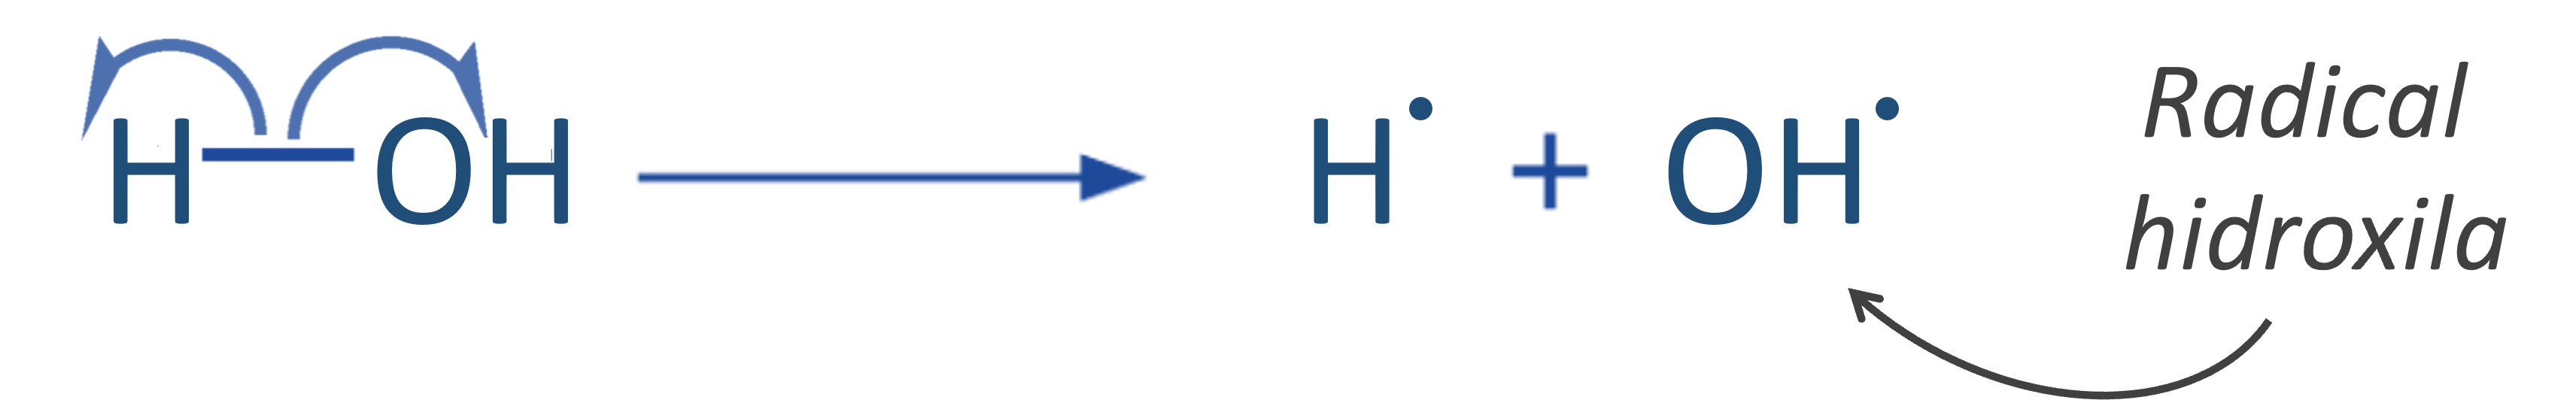 Formação do radical hidroxila pelo rompimento homolítico da molécula de água.